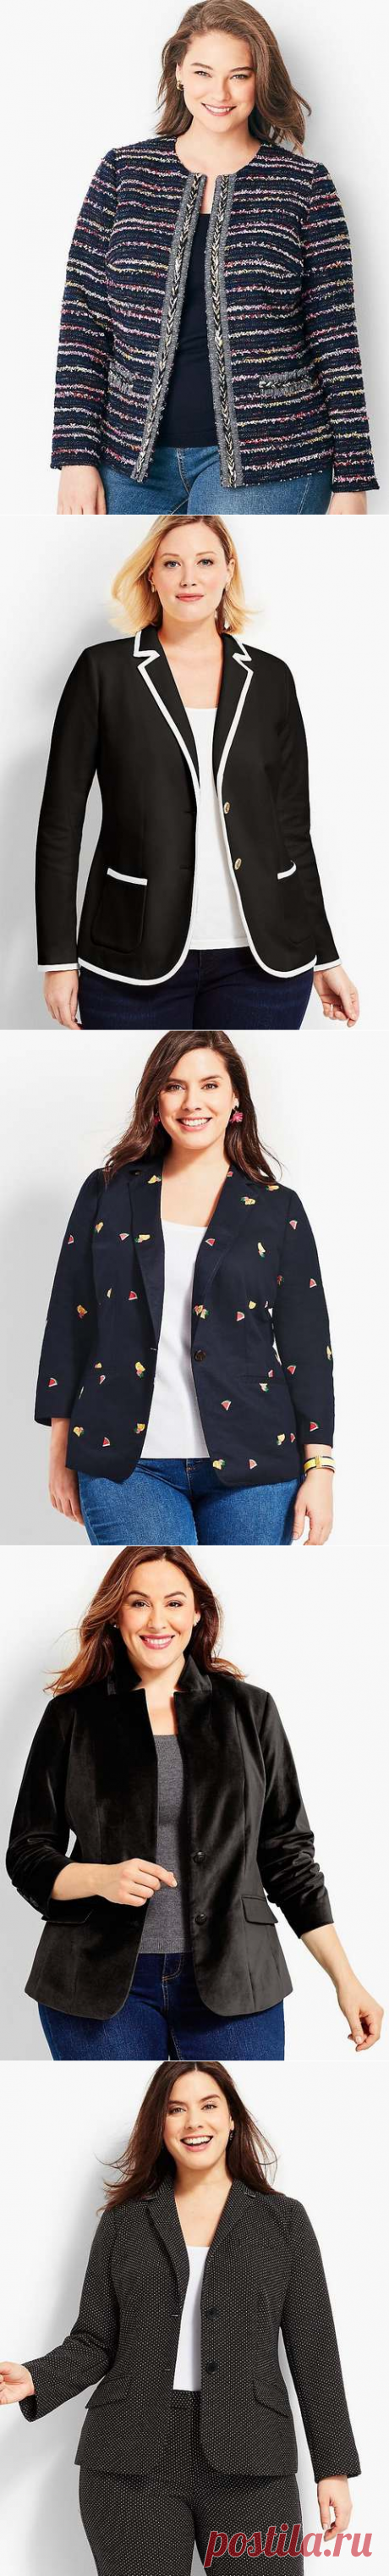 Жакеты и пиджаки для полных девушек и женщин американского бренда Talbots осень 2018 (60 фото)